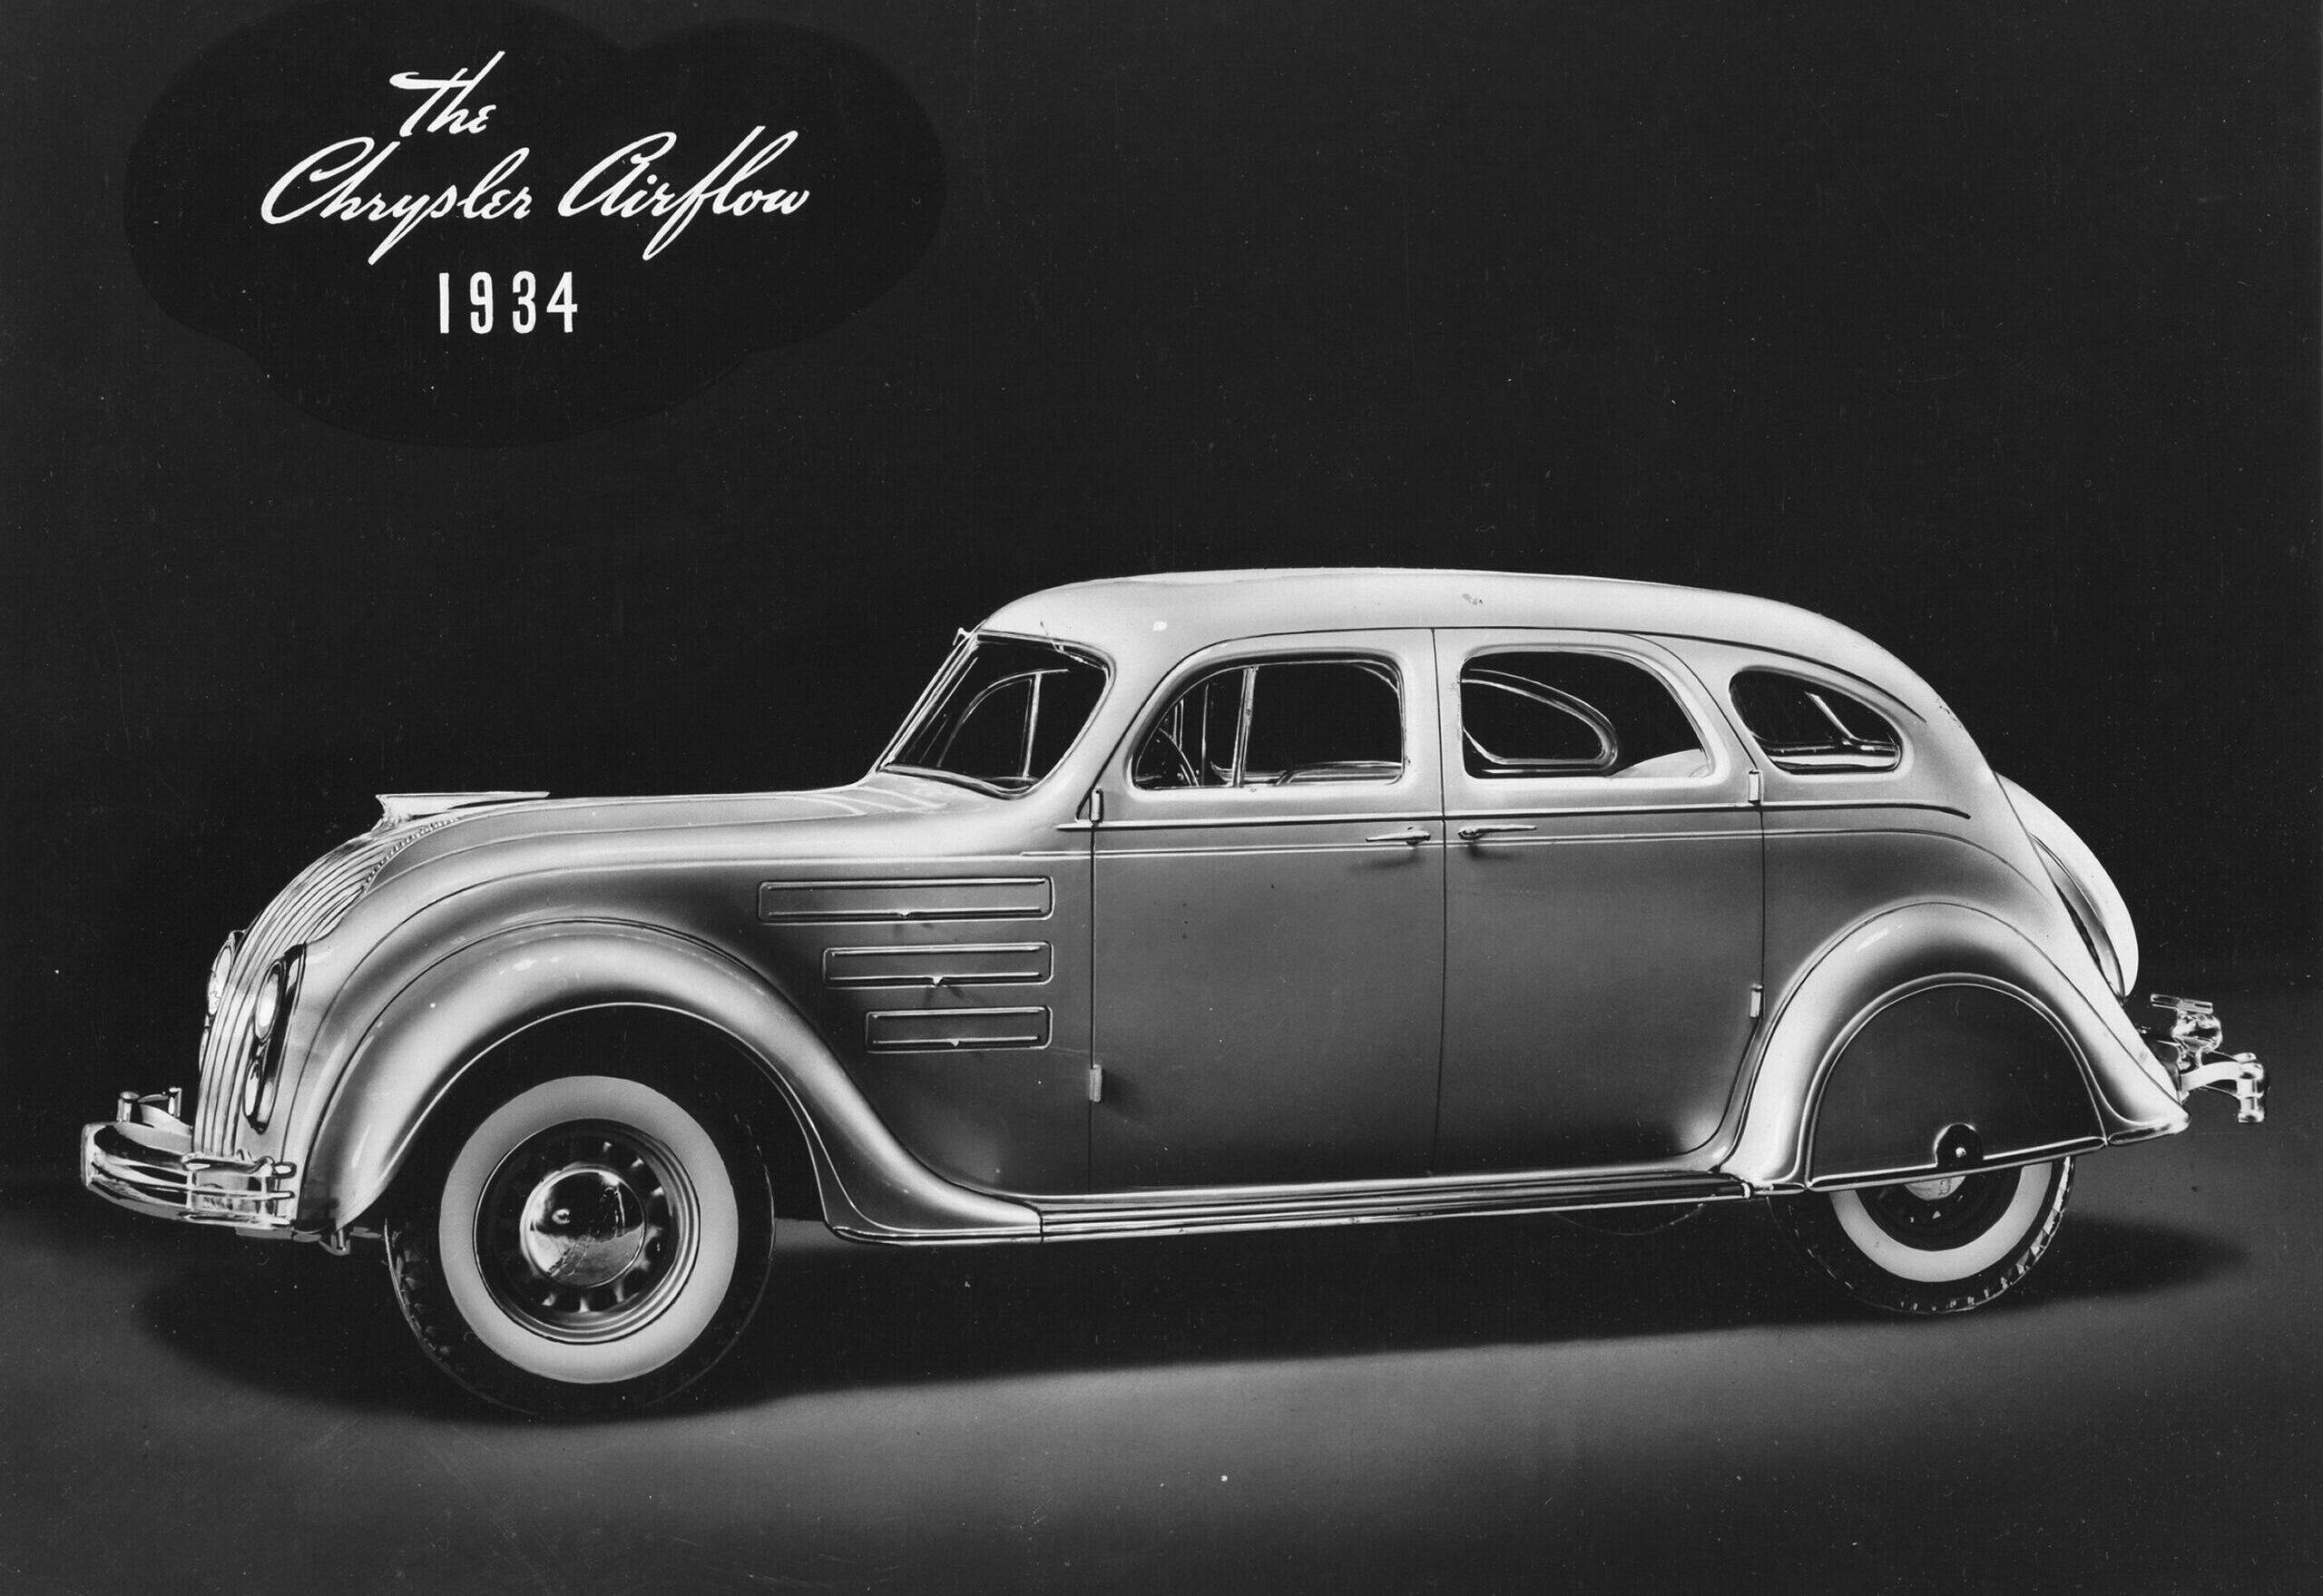 Chrysler Airflow car design war WWII vision thing